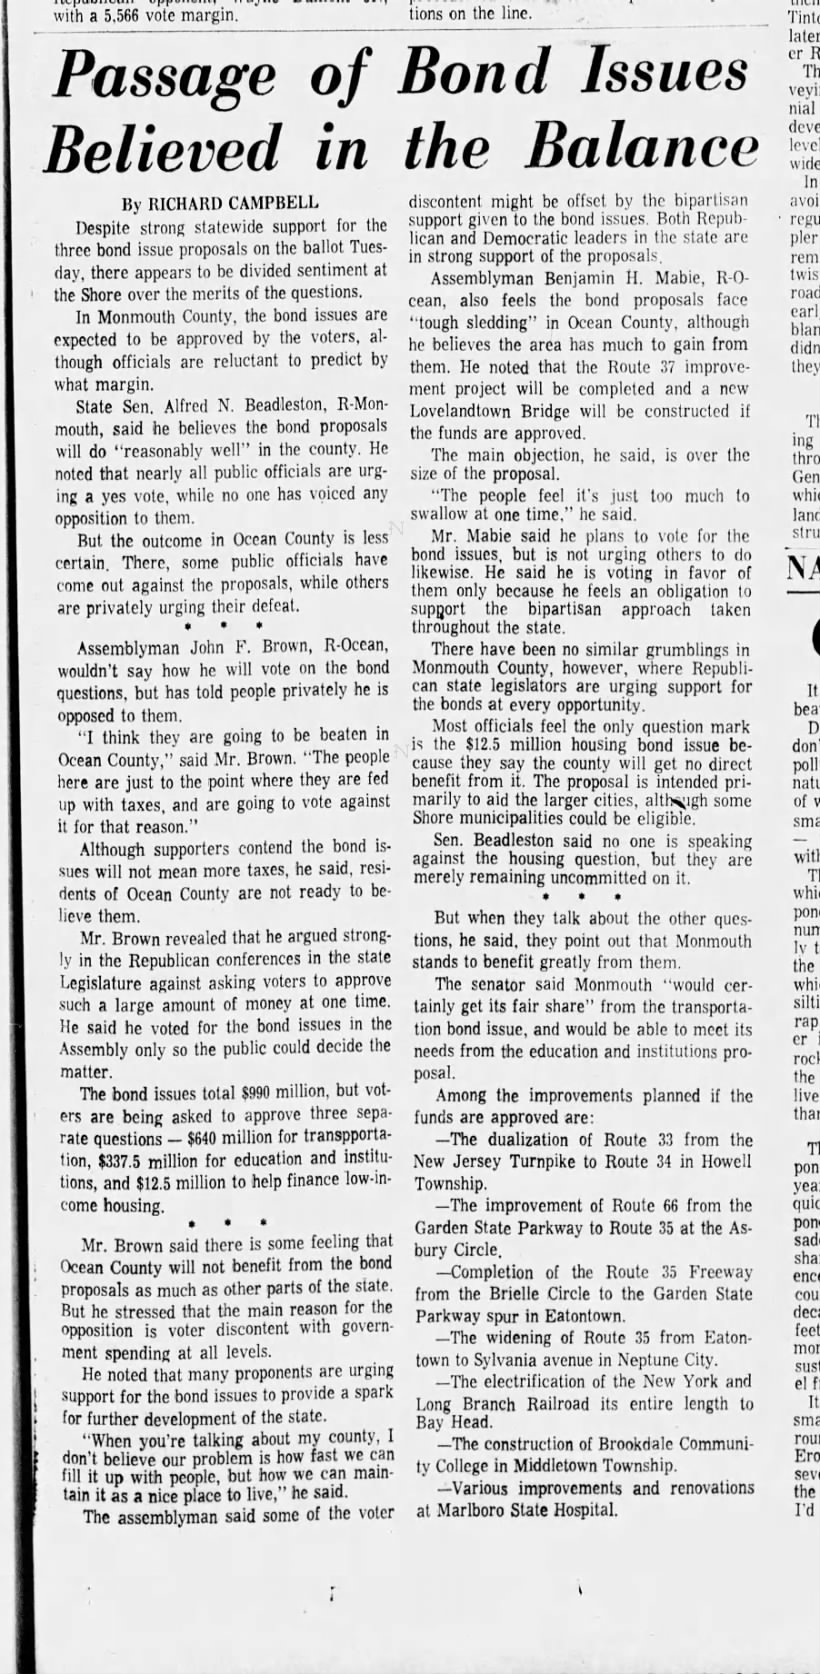 Lovelandtown bond, November 3, 1968